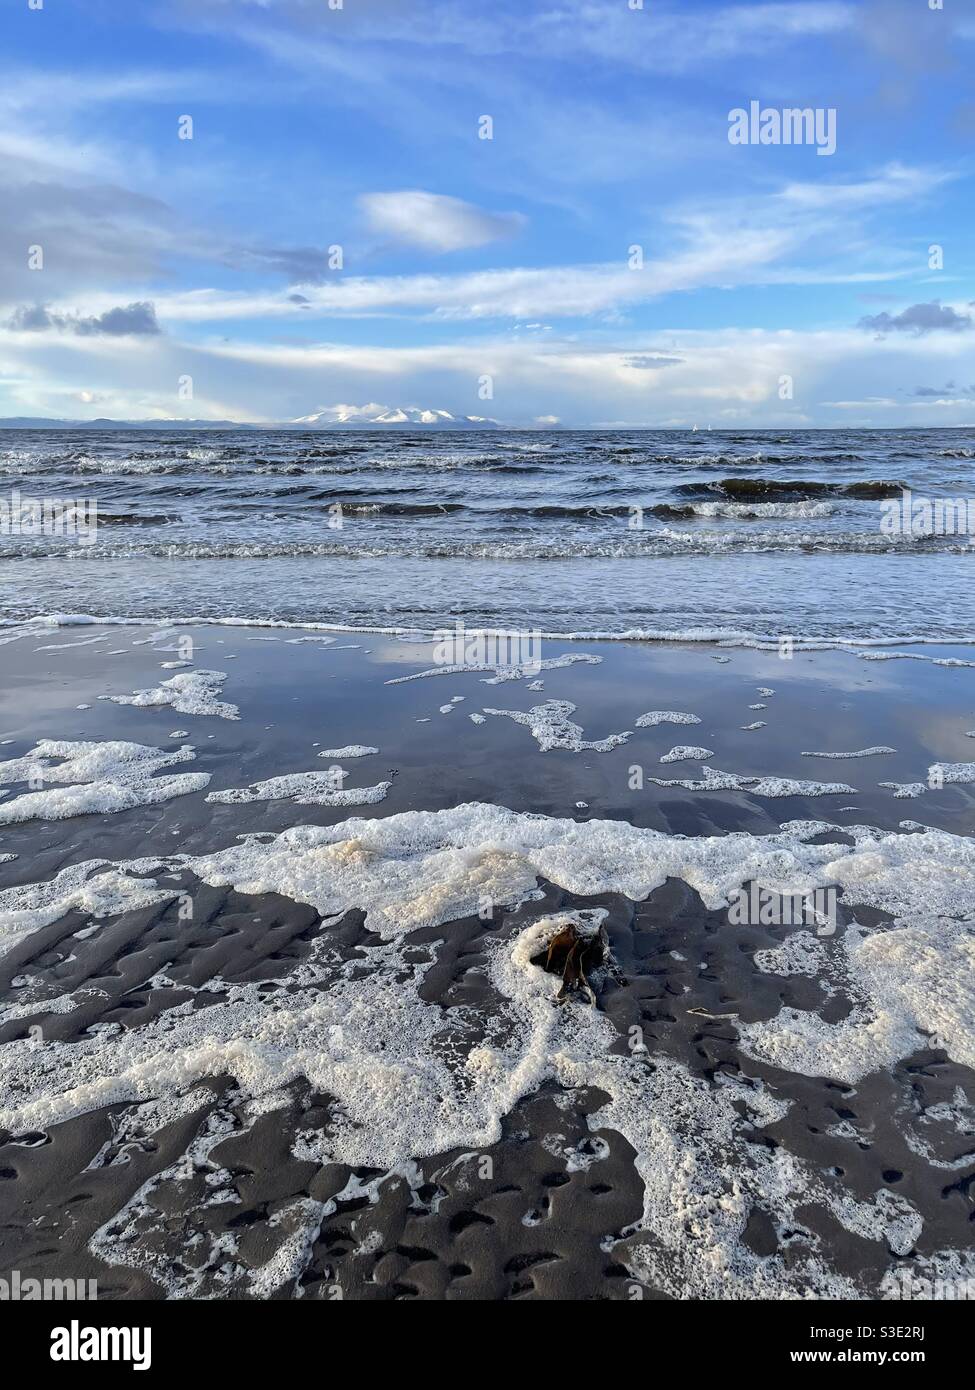 Splendida vista panoramica sul mare oceano dalla spiaggia di Prestwick, Ayrshire, Scozia, sulla Firth of Clyde, costa occidentale. Isola di Arran in lontananza. Spazio respiratorio e aria fresca per la salute mentale e il benessere. Foto Stock